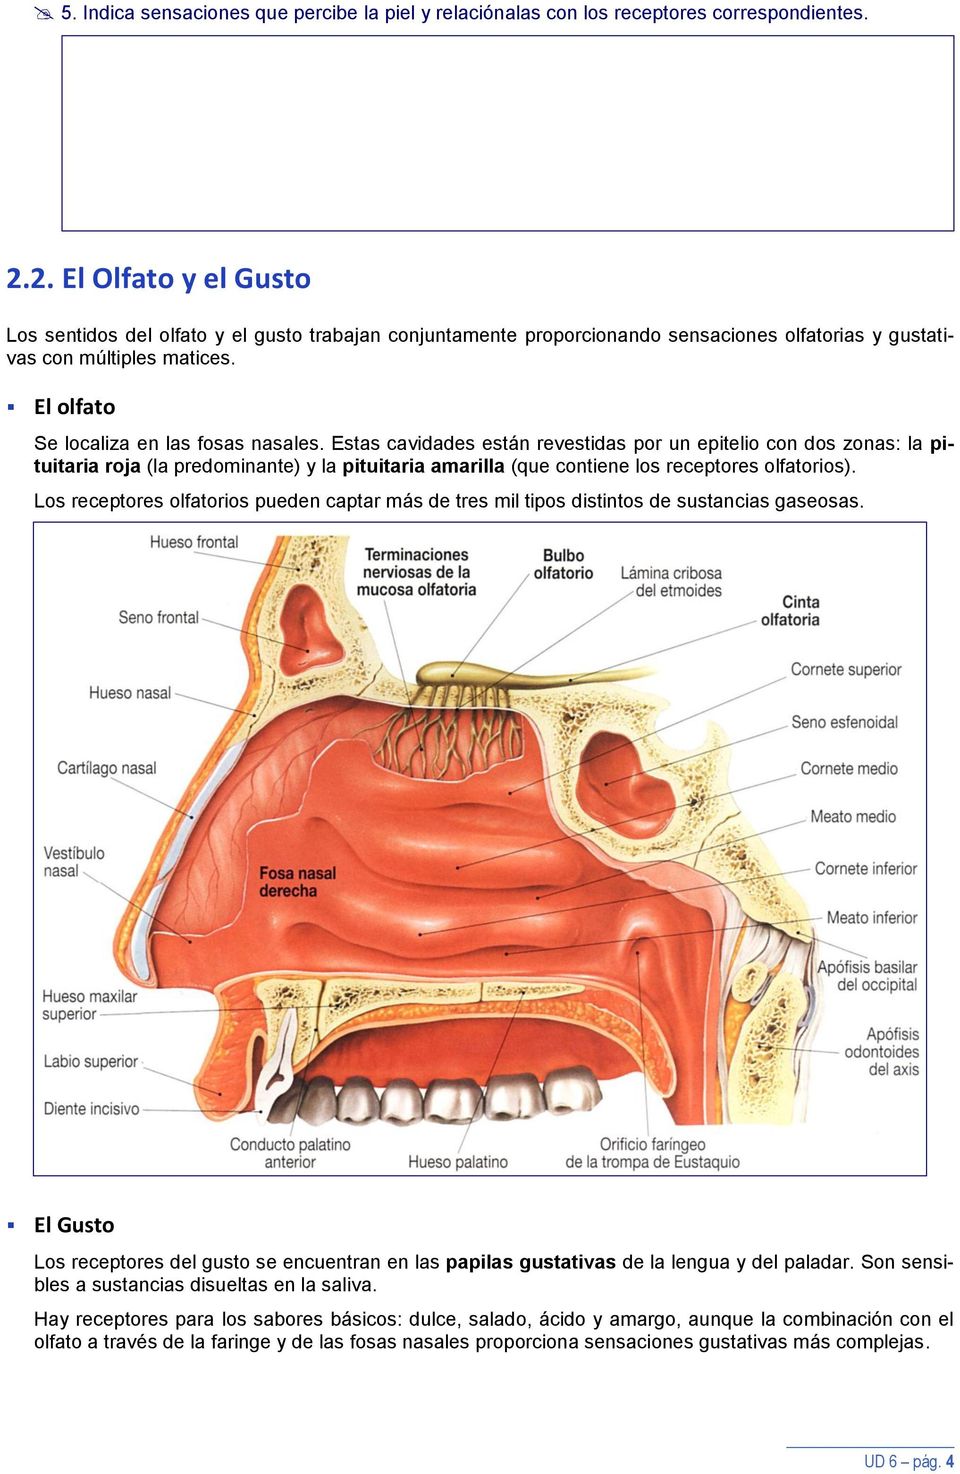 Estas cavidades están revestidas por un epitelio con dos zonas: la pituitaria roja (la predominante) y la pituitaria amarilla (que contiene los receptores olfatorios).